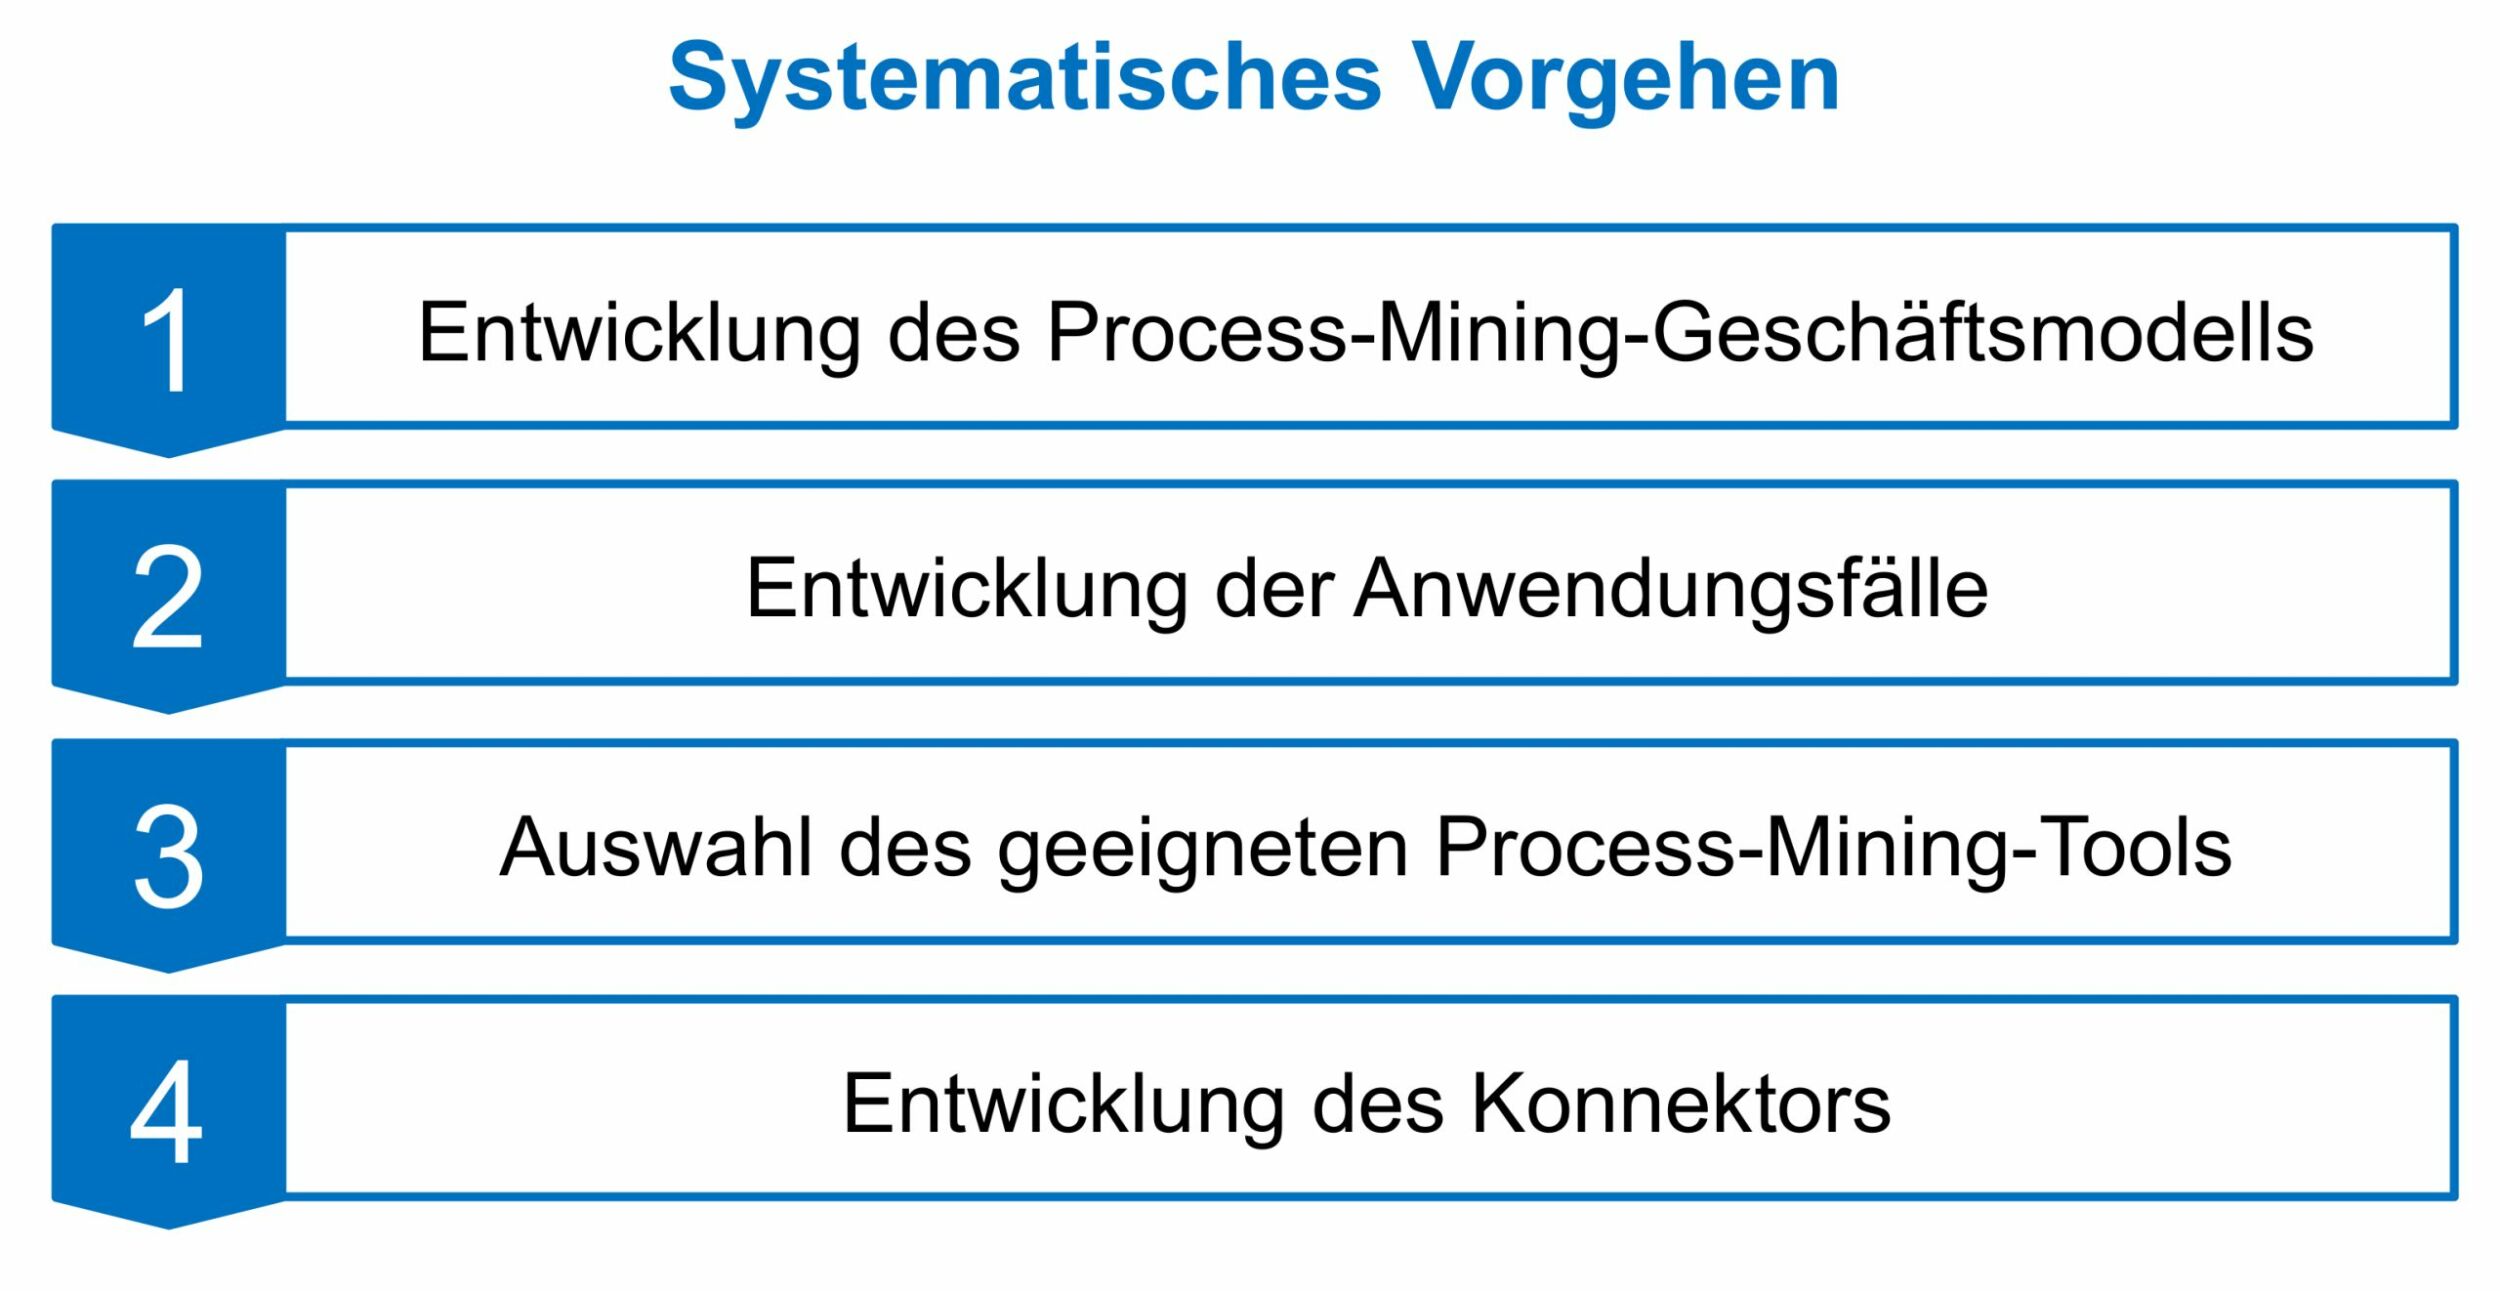 Systematisches Vorgehen (Bild: FIR e. V. an der RWTH Aachen)